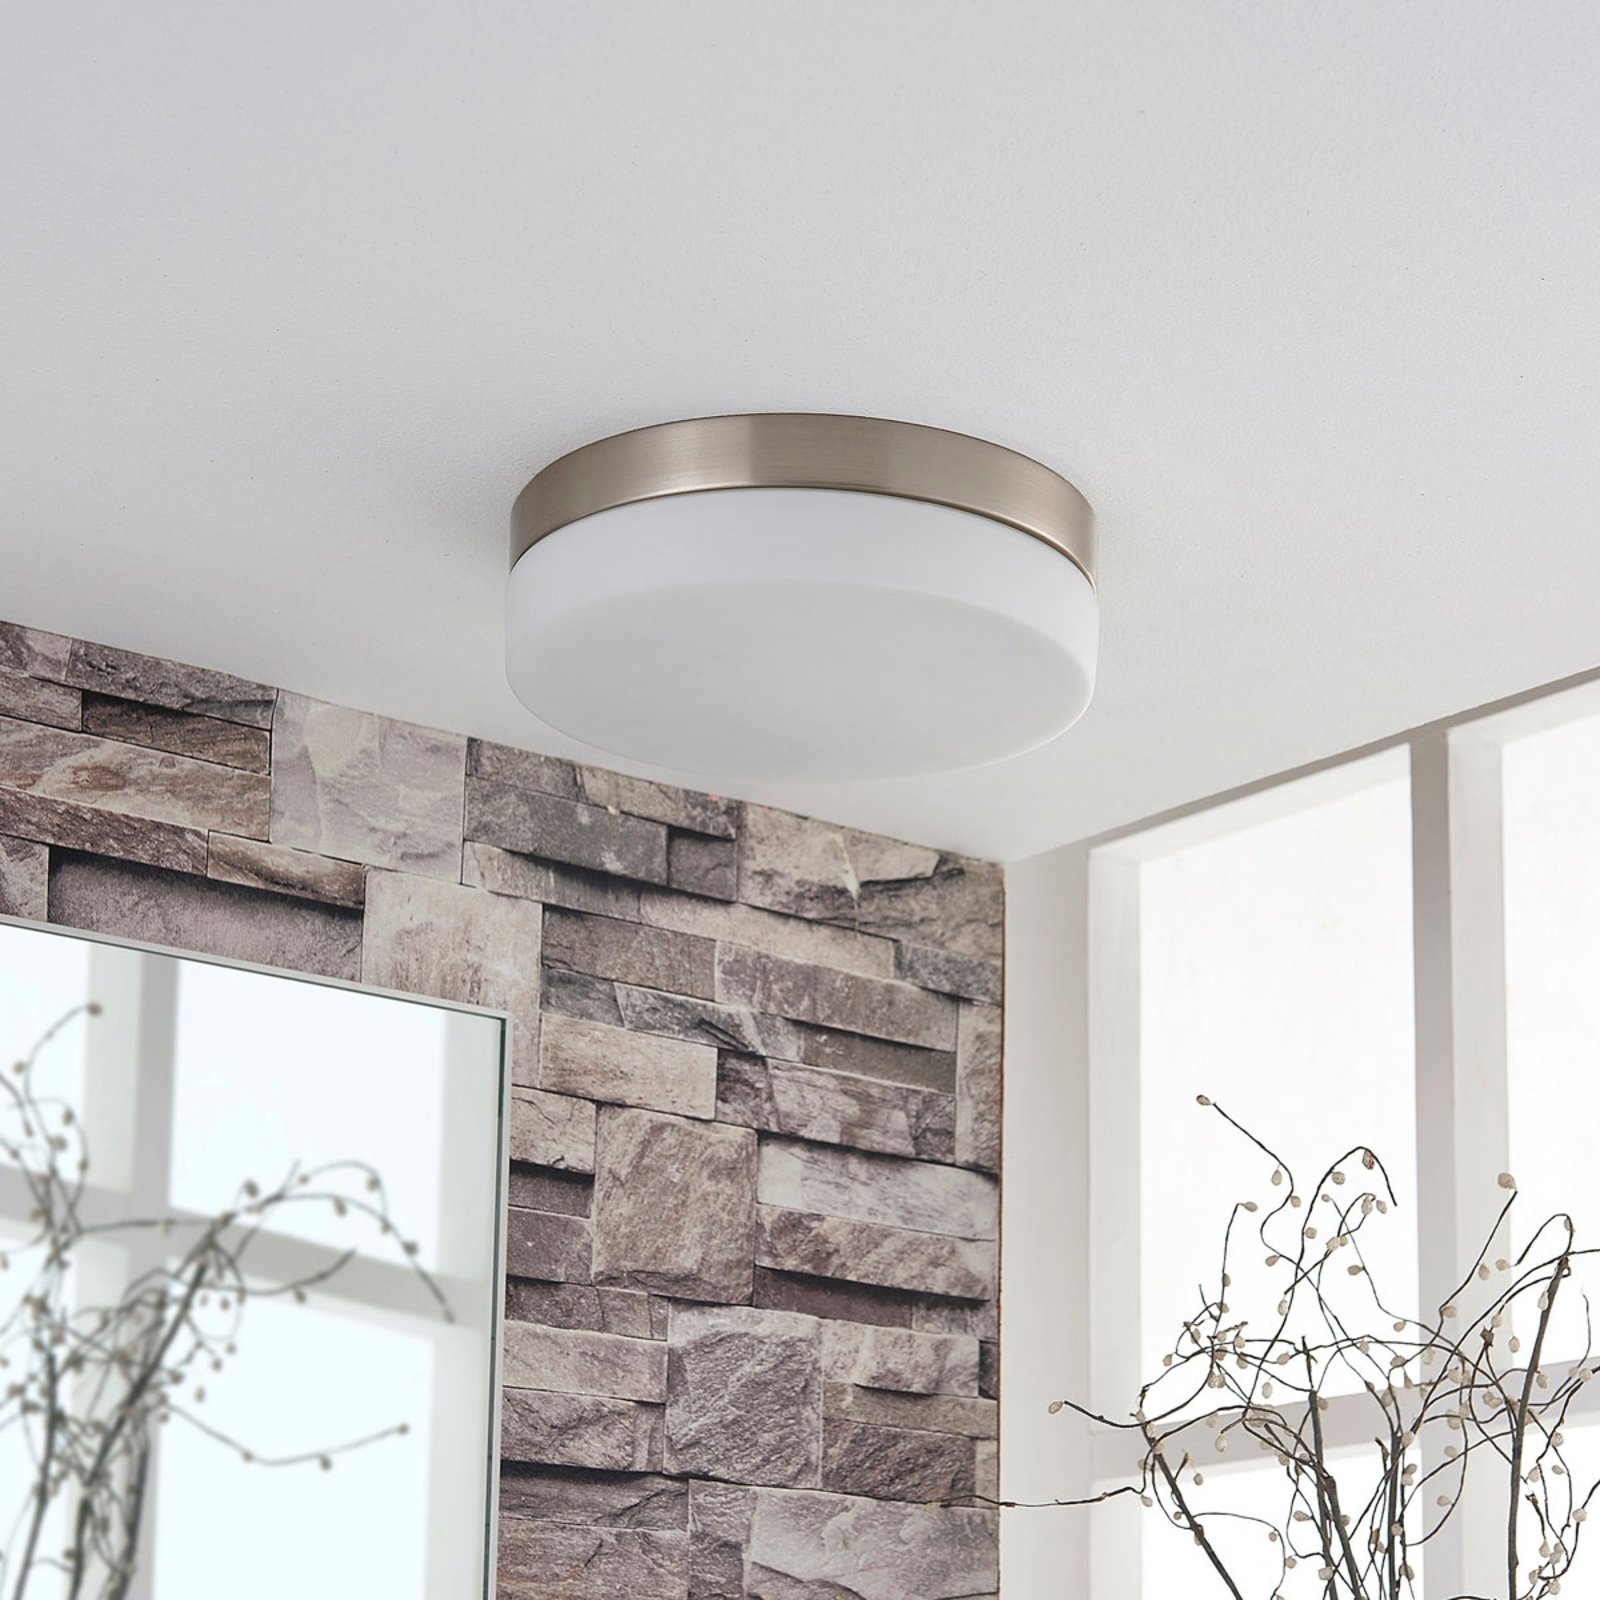 Φωτιστικό οροφής Amilia για το μπάνιο με γυάλινο κάλυμμα, Ø 23,5 cm